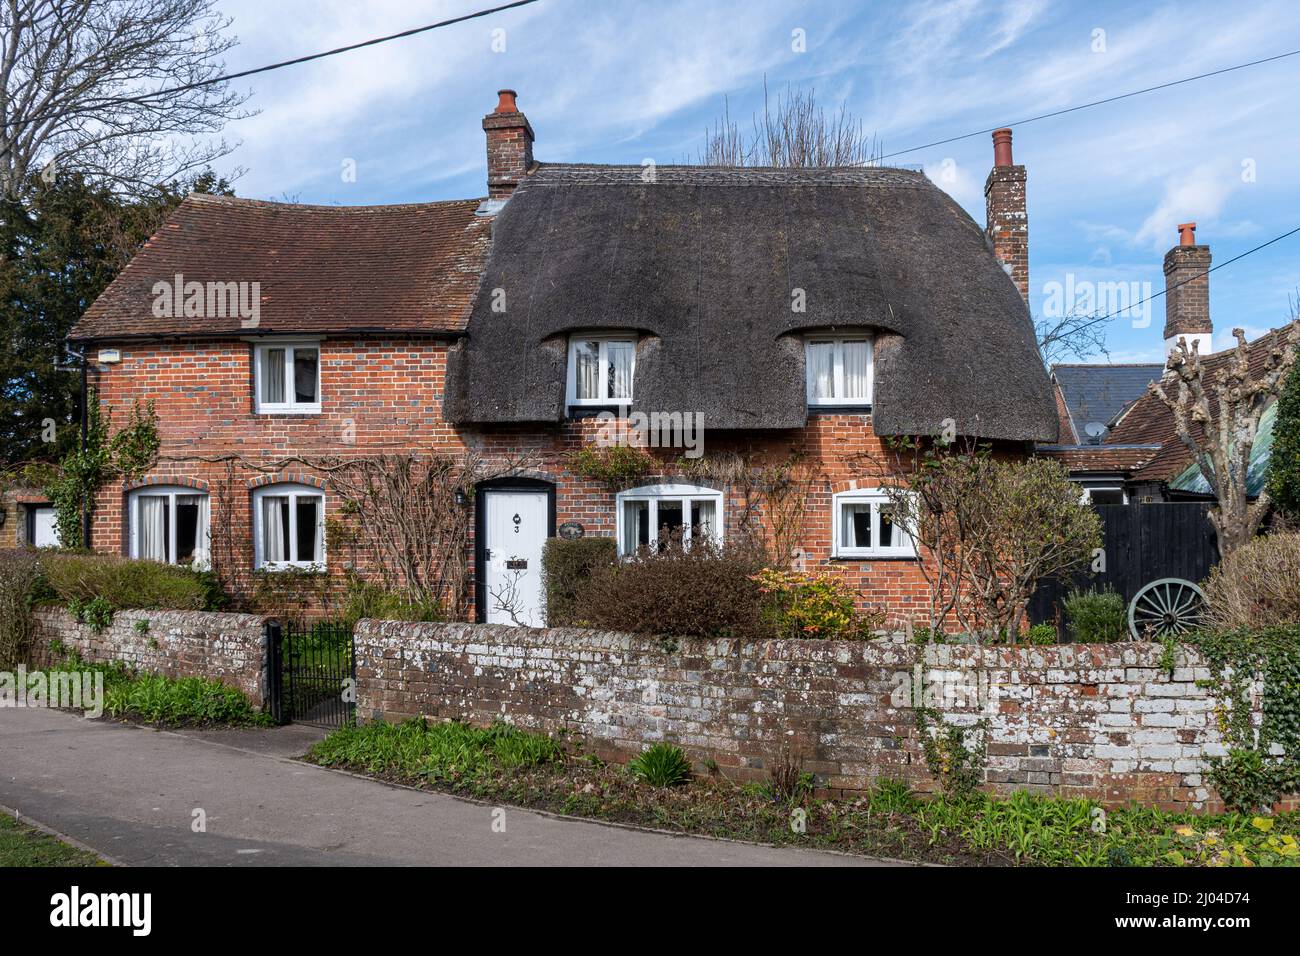 Maison de chaume appelée Forge Cottage dans le village d'Oakley dans le Hampshire, Angleterre, Royaume-Uni Banque D'Images